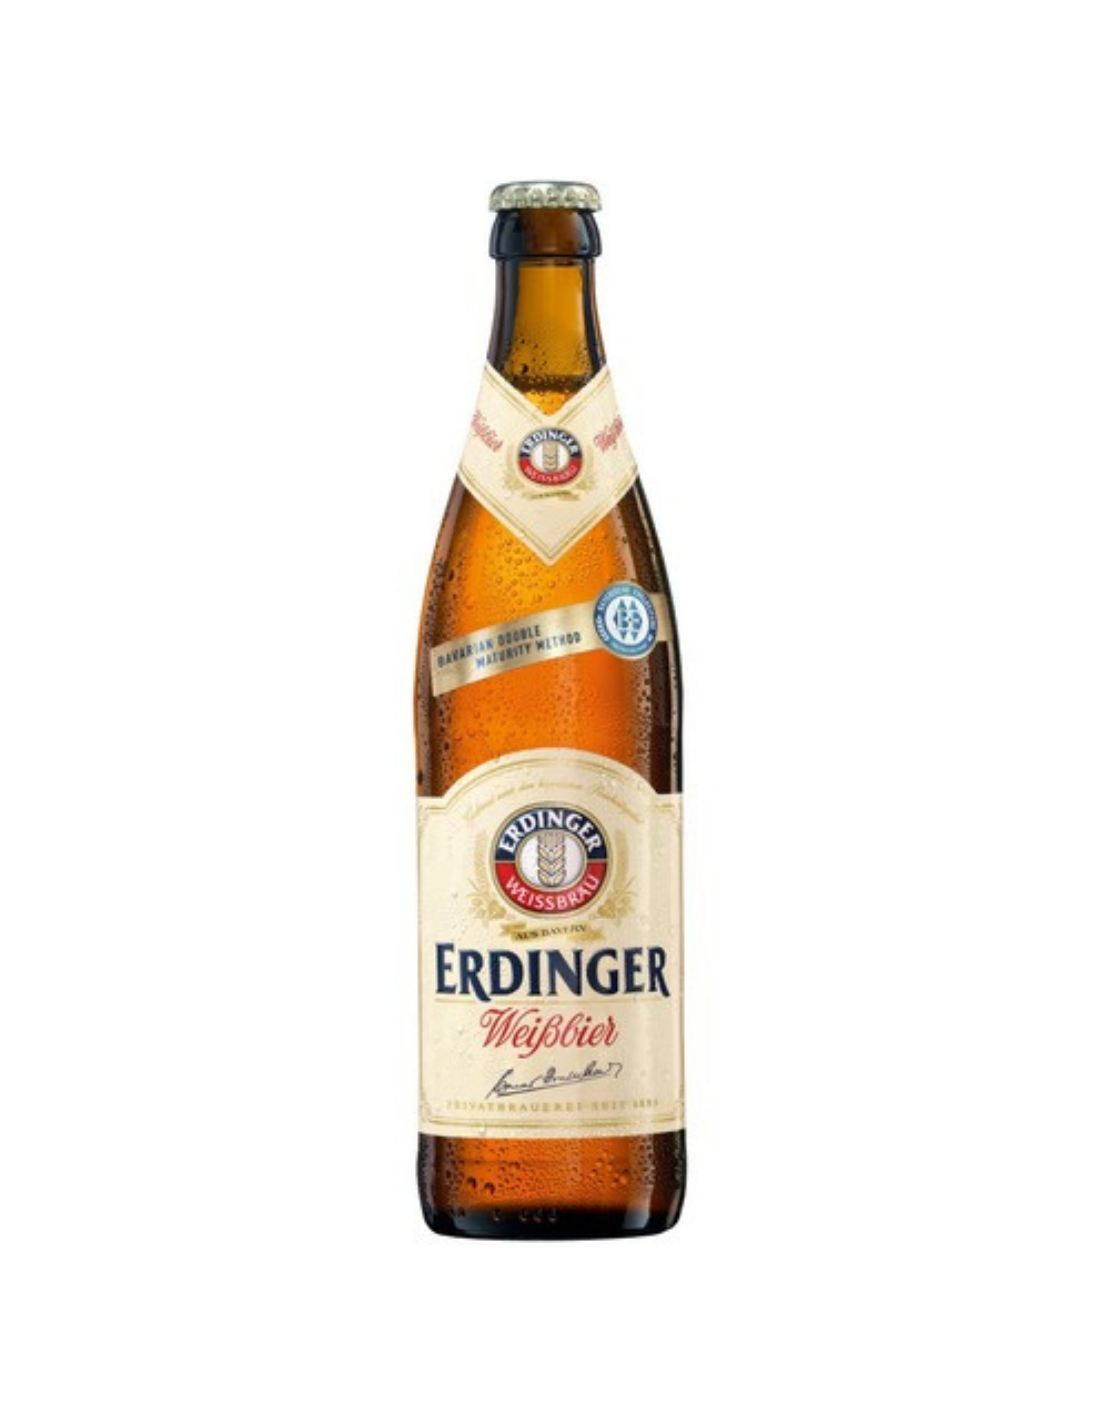 Bere blonda, nefiltrata Erdinger Weissbier, 5.3% alc., 0.5L, sticla, Germania alcooldiscount.ro